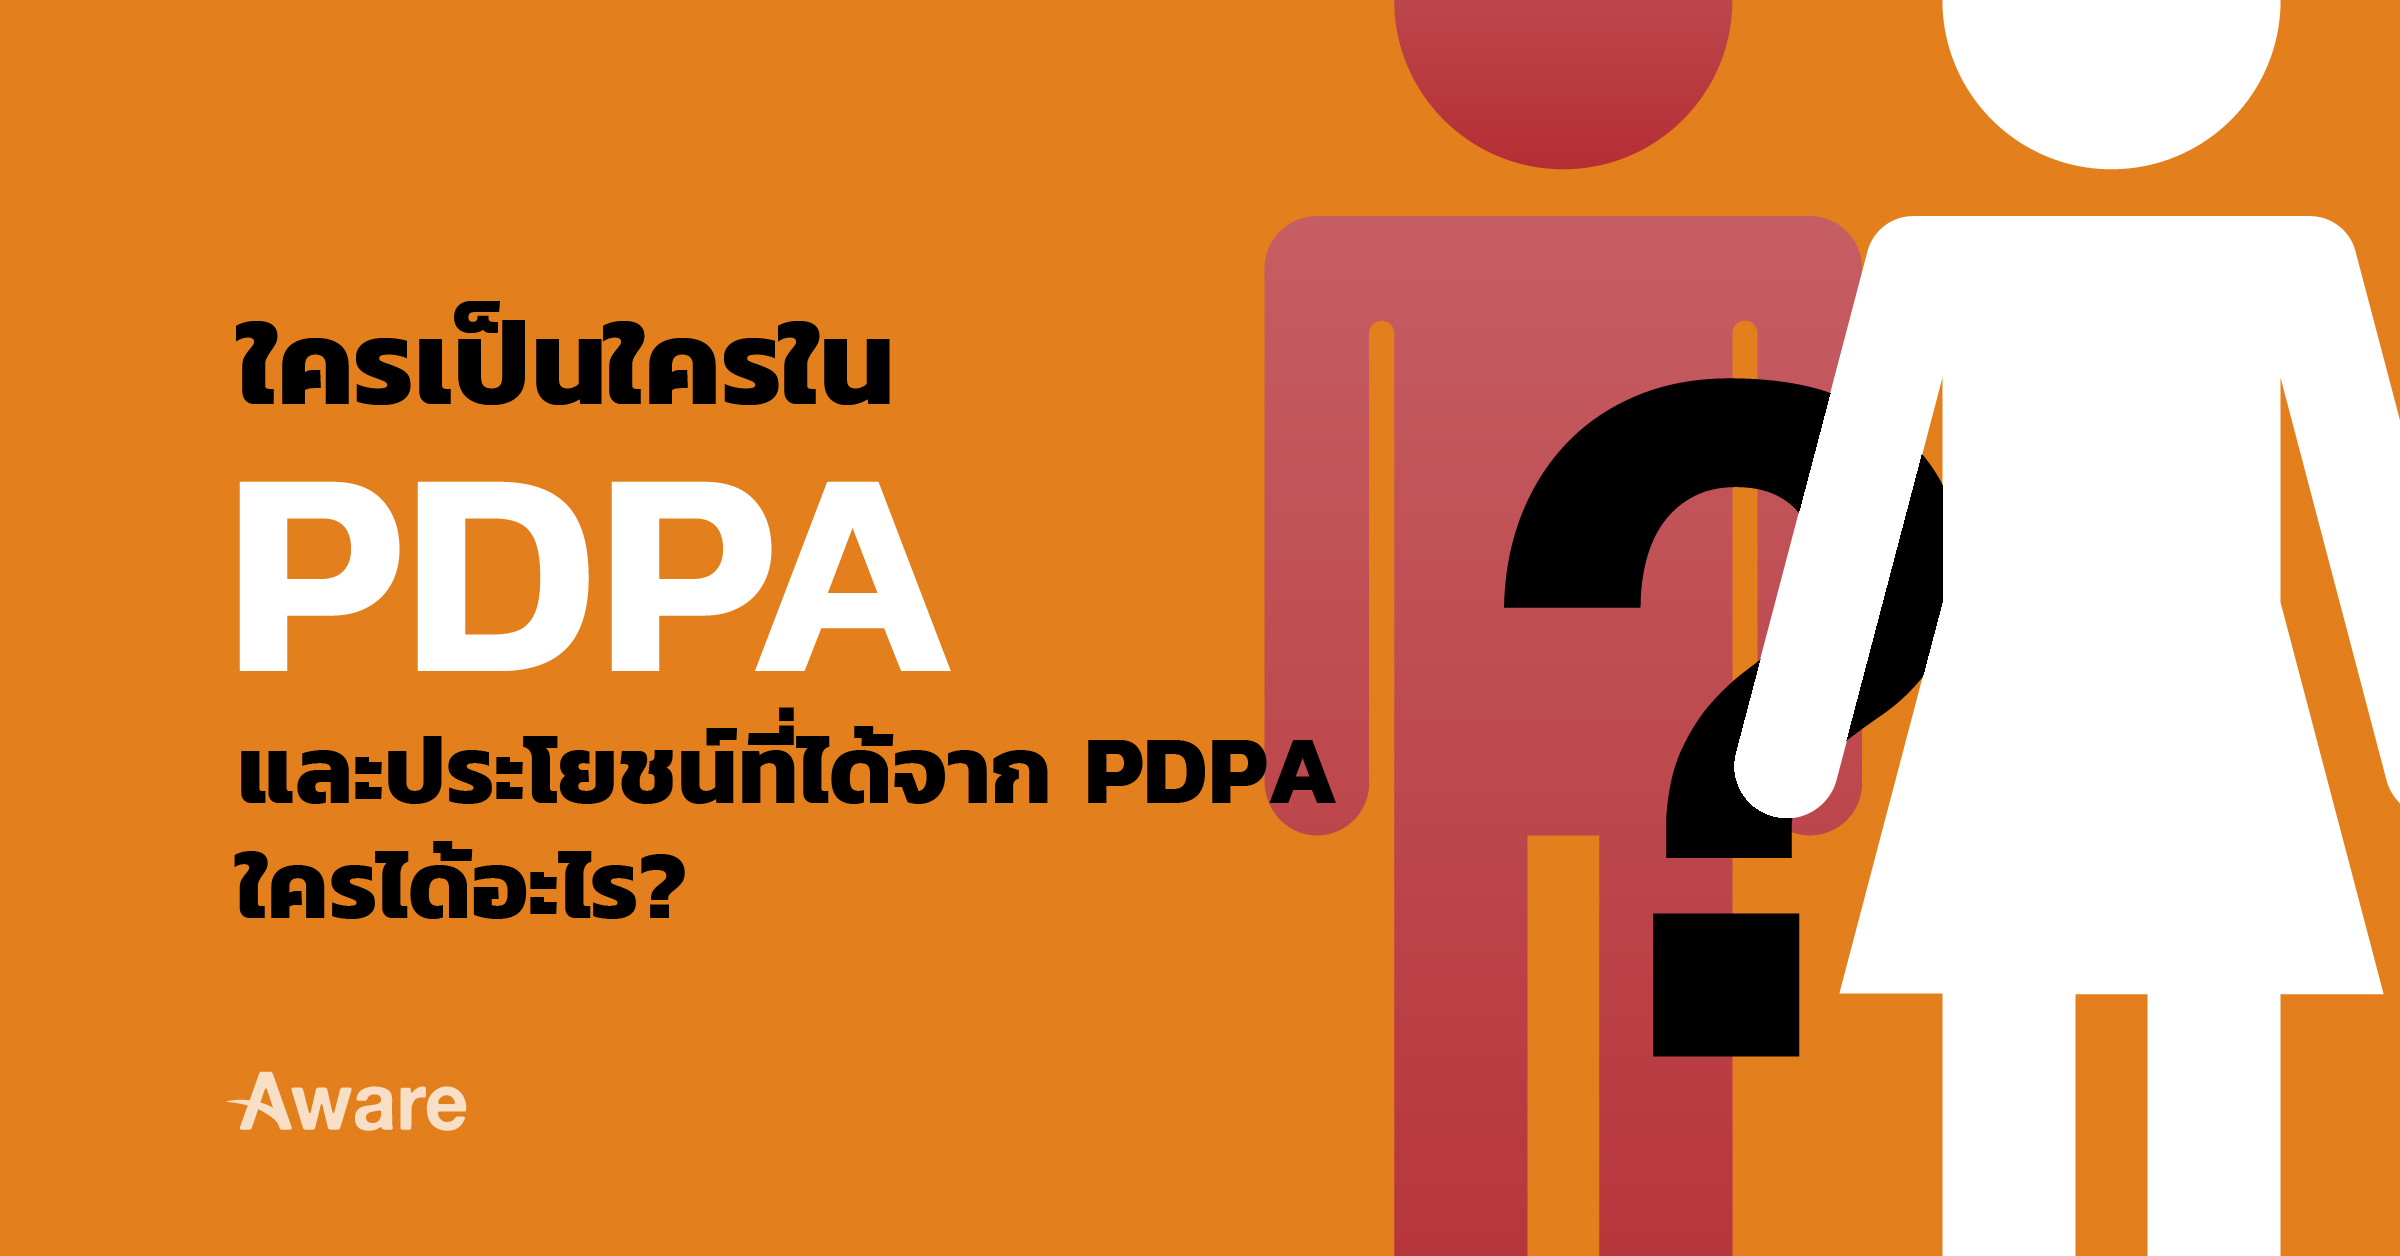 ทบทวนเรื่องของ PDPA ที่ภาคธุรกิจควรให้ความสำคัญ